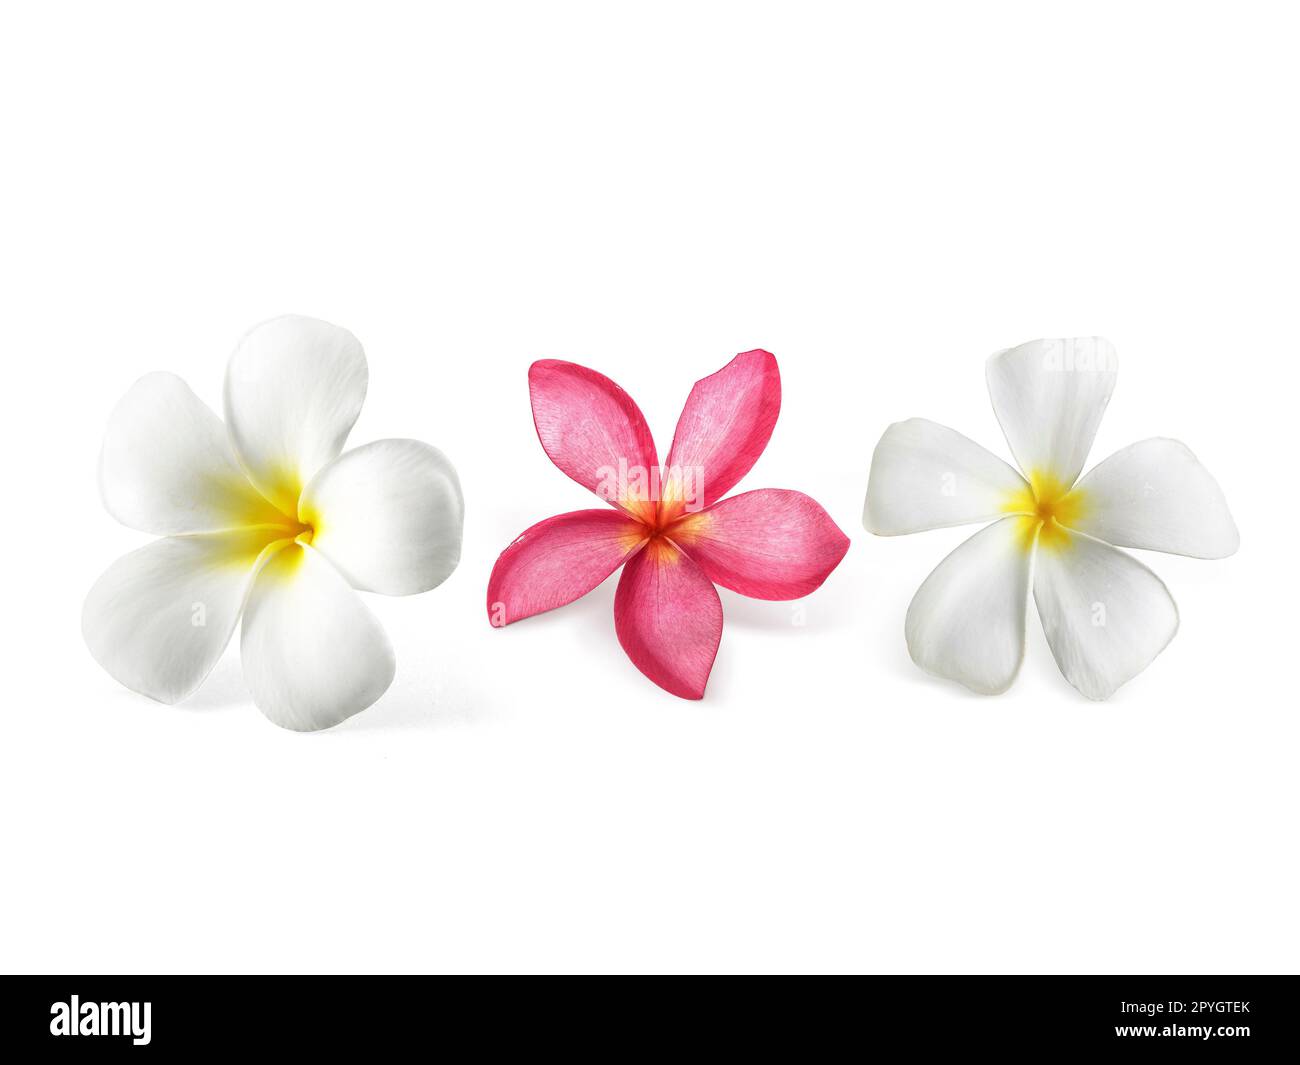 frangipani flower isolated on white Stock Photo